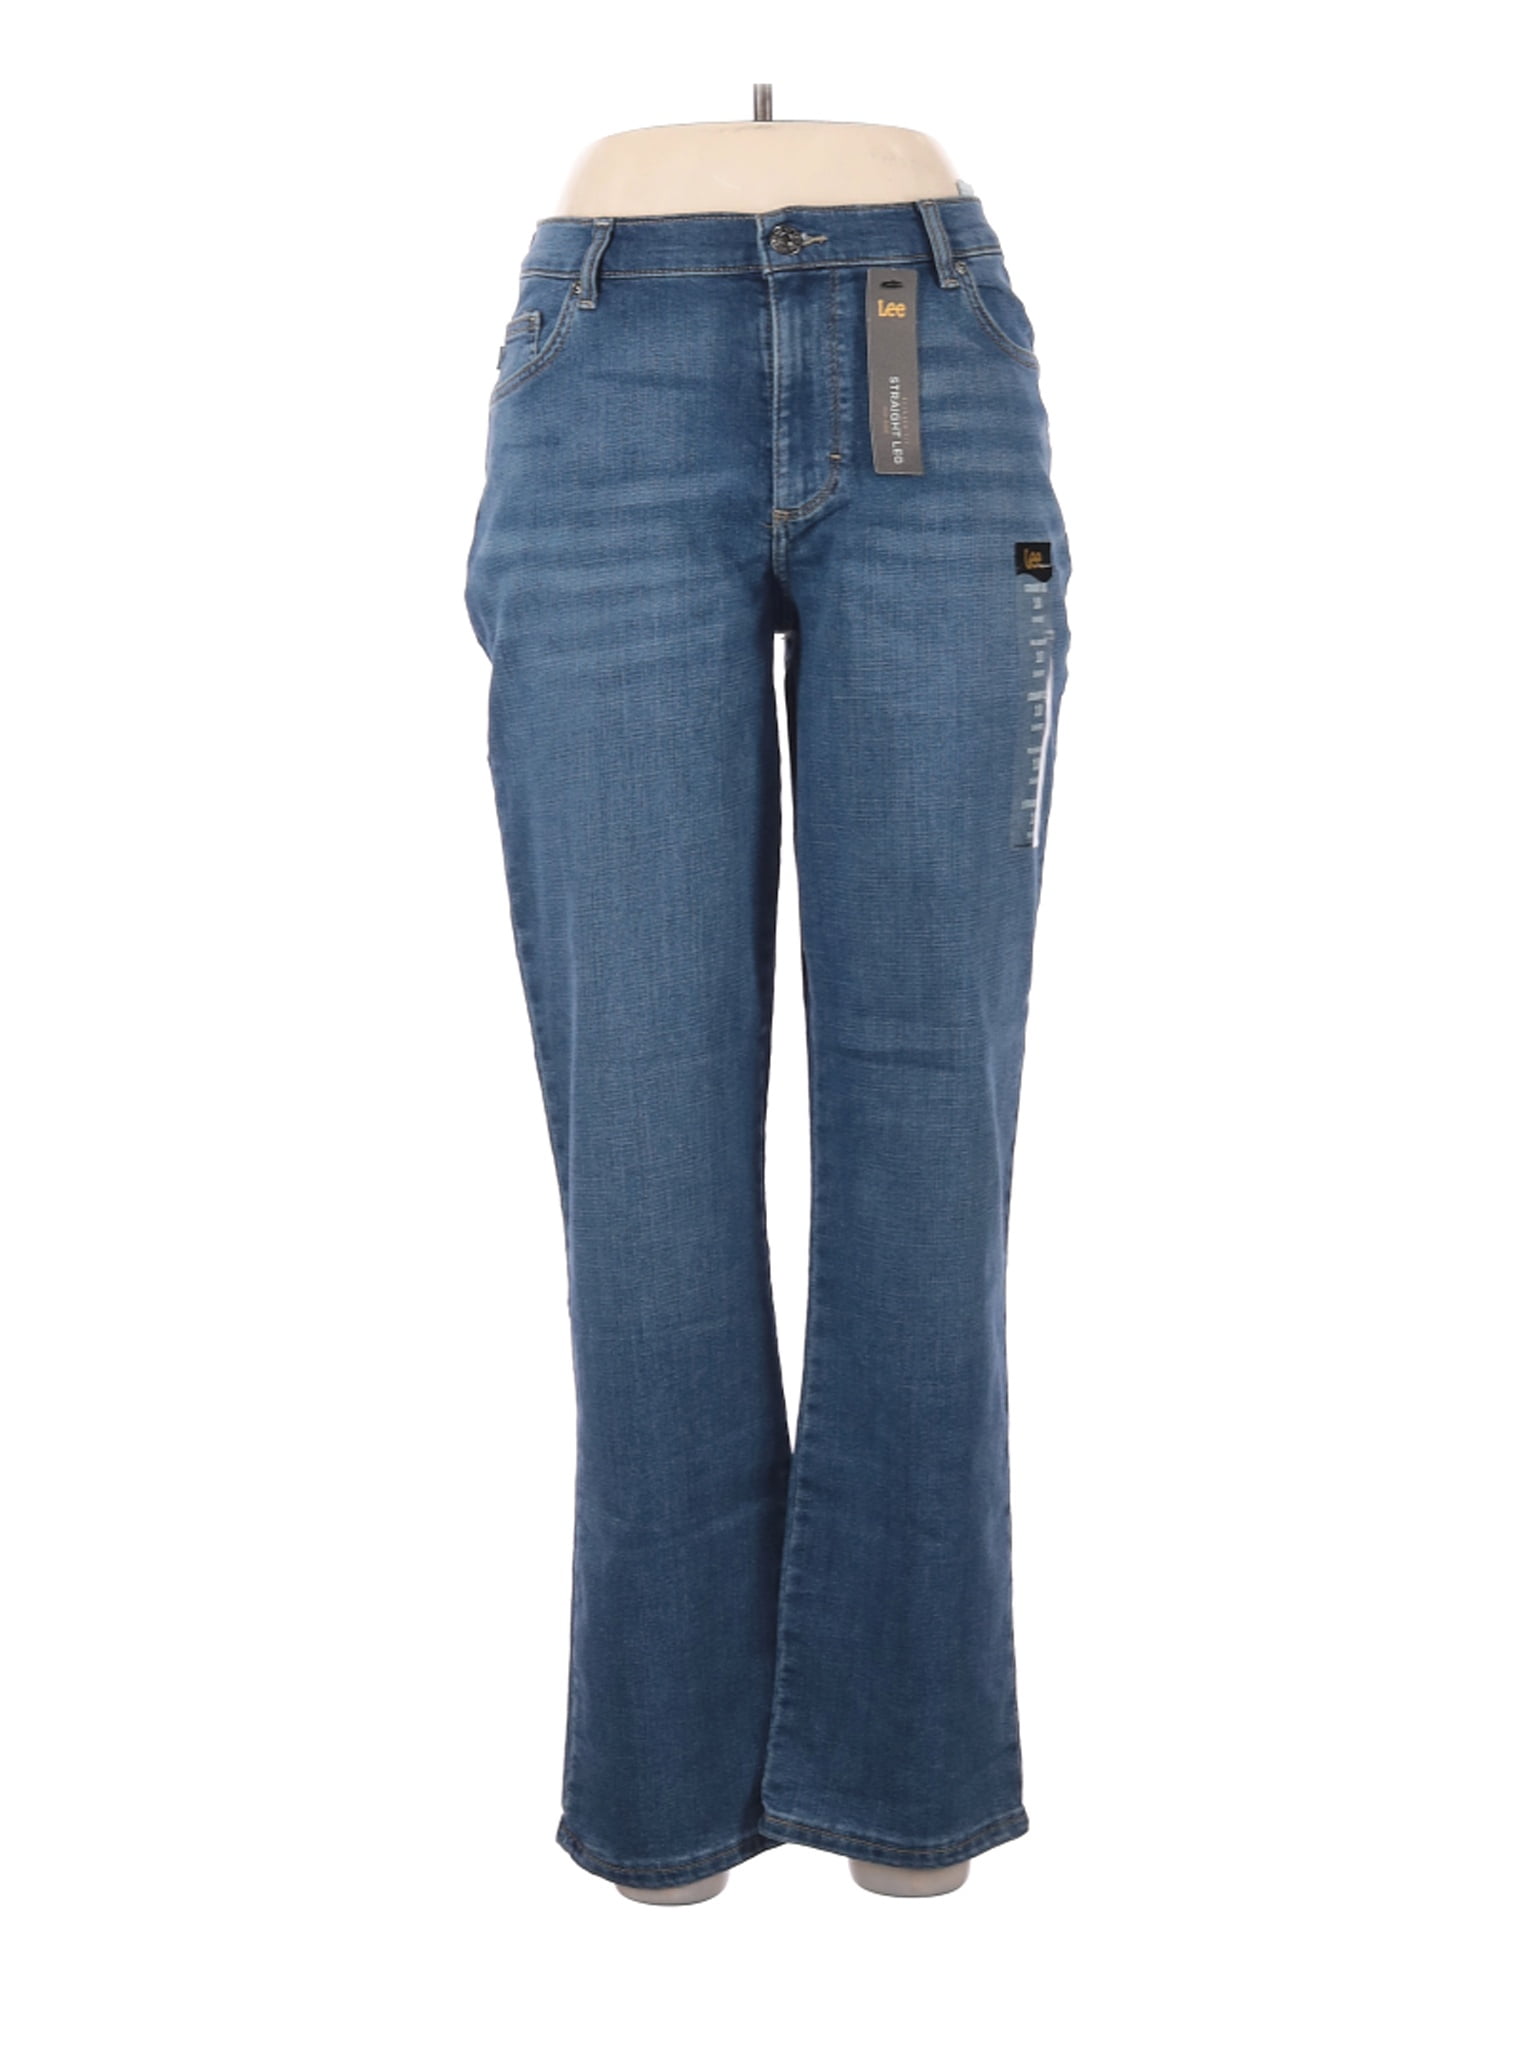 women's lee jeans walmart